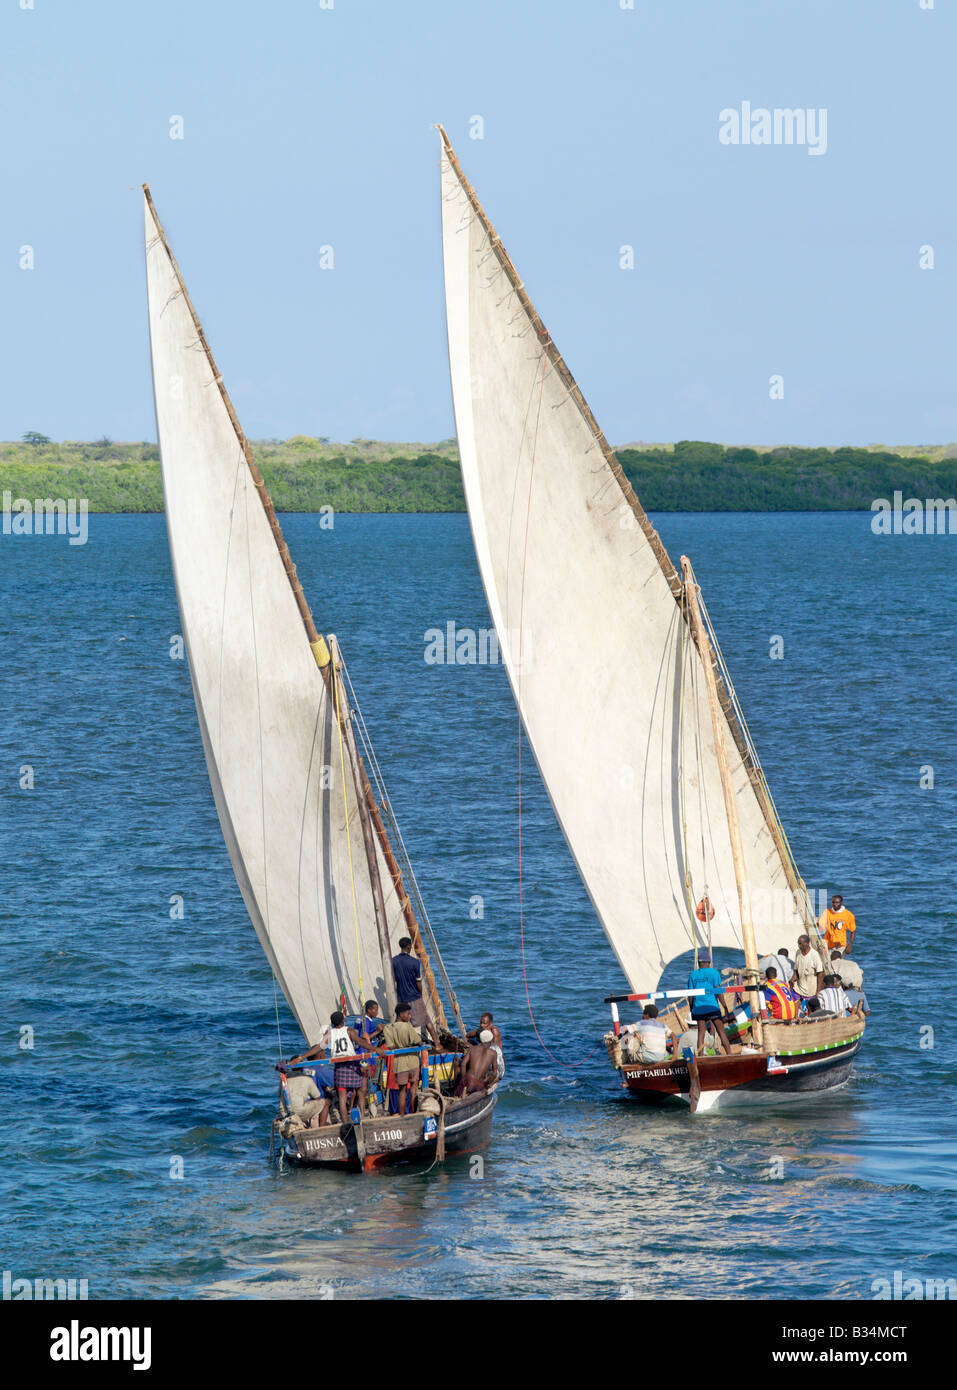 Kenya, Coast Province, isola di Lamu. Dhows sailing off isola di Lamu. Dhow o Dau è la parola colloquiale utilizzato dalla maggior parte dei visitatori per Foto Stock